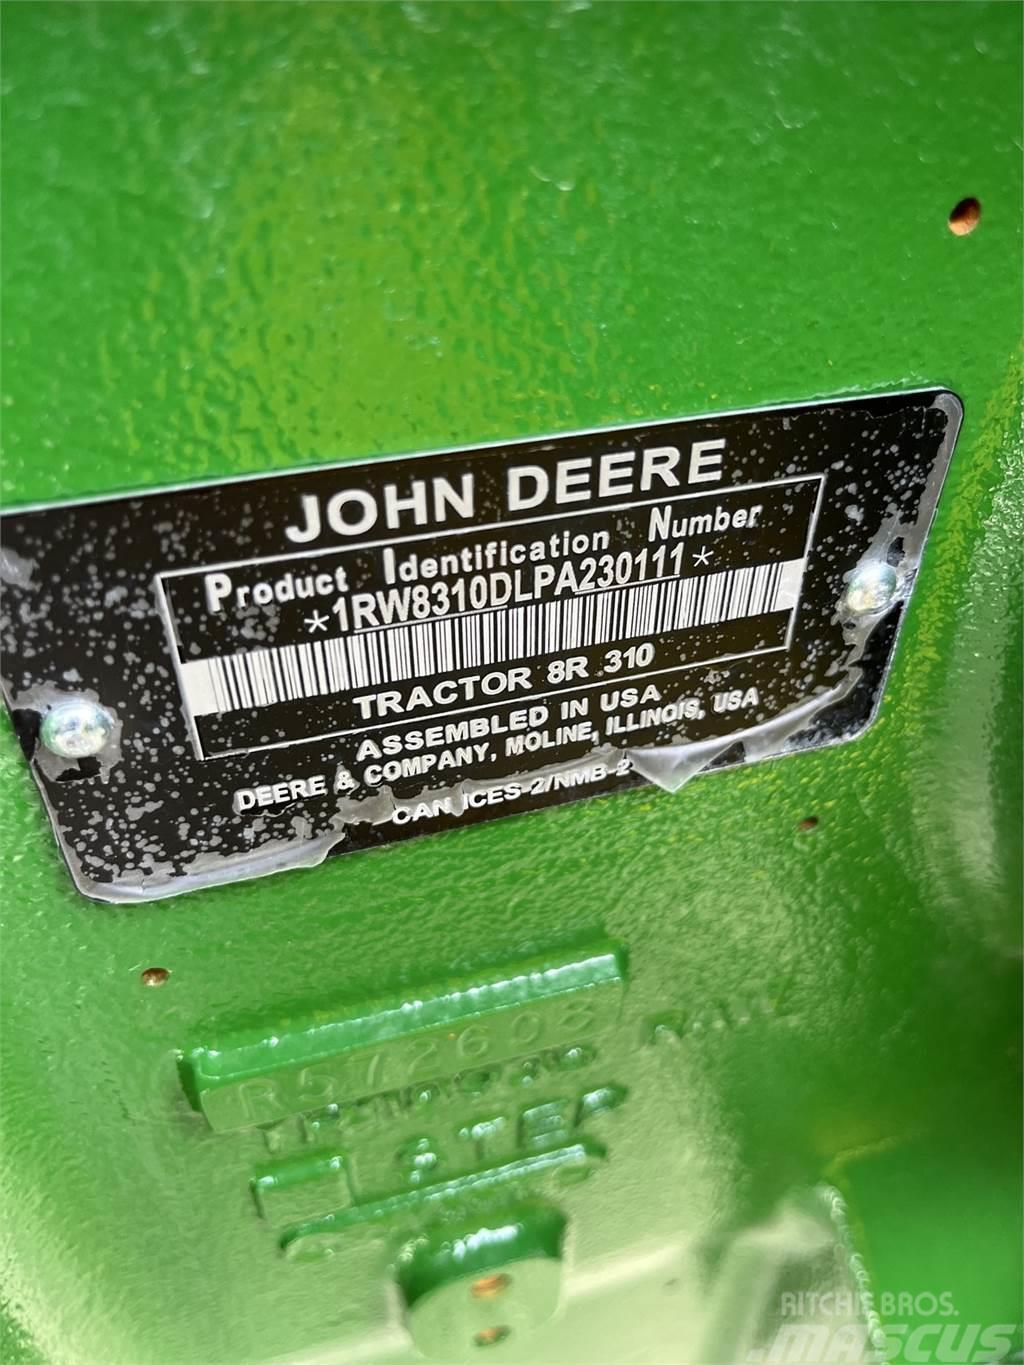 John Deere 8R 310 Traktorok